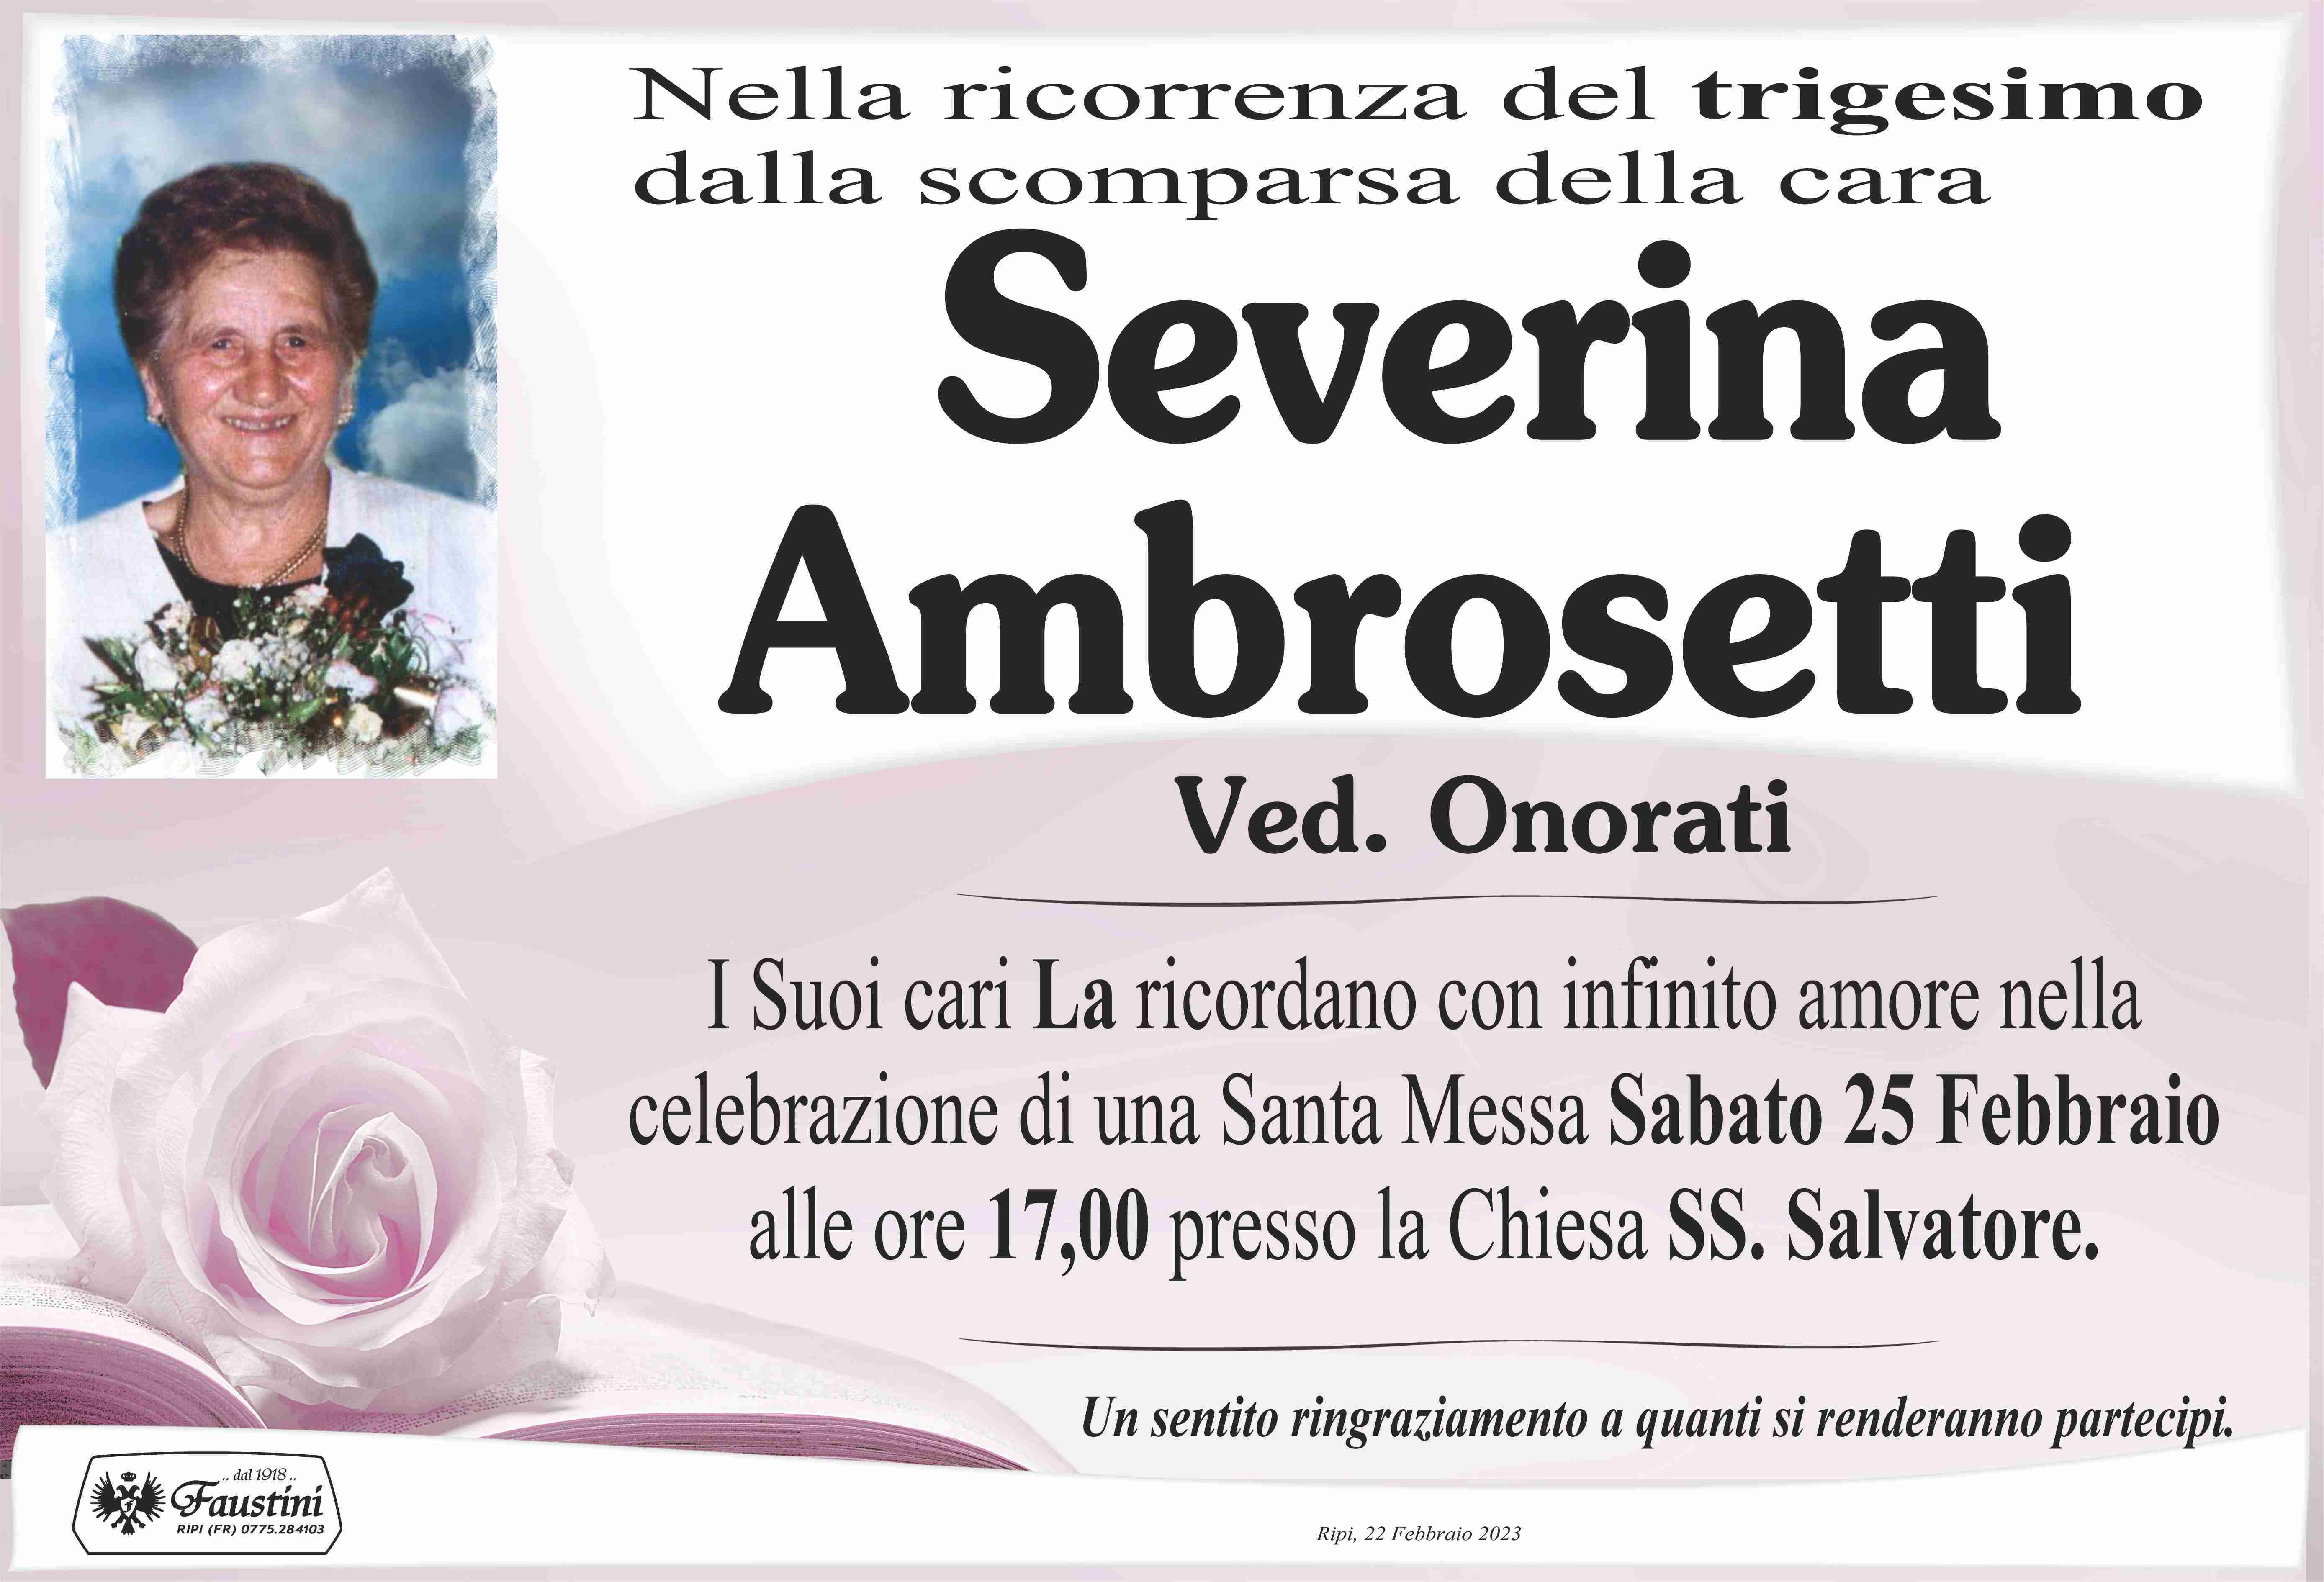 Severina Ambrosetti